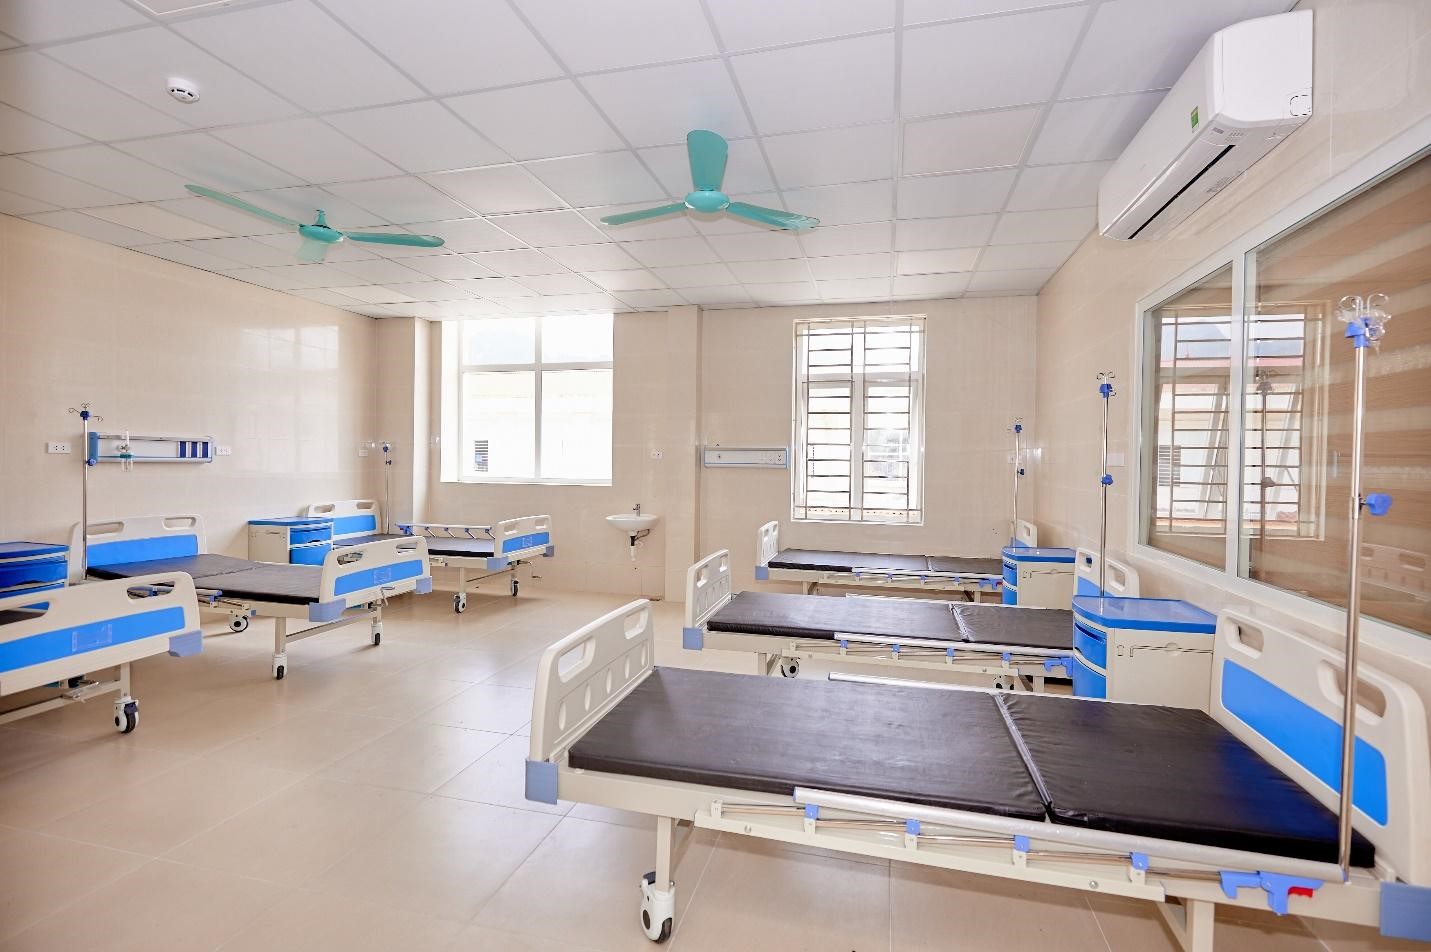 Kinh doanh - Đưa vào hoạt động Nhà khám chữa bệnh - Bệnh viện Đa khoa huyện Định Hóa (Thái Nguyên) do Tập đoàn Sun Group tài trợ (Hình 3).